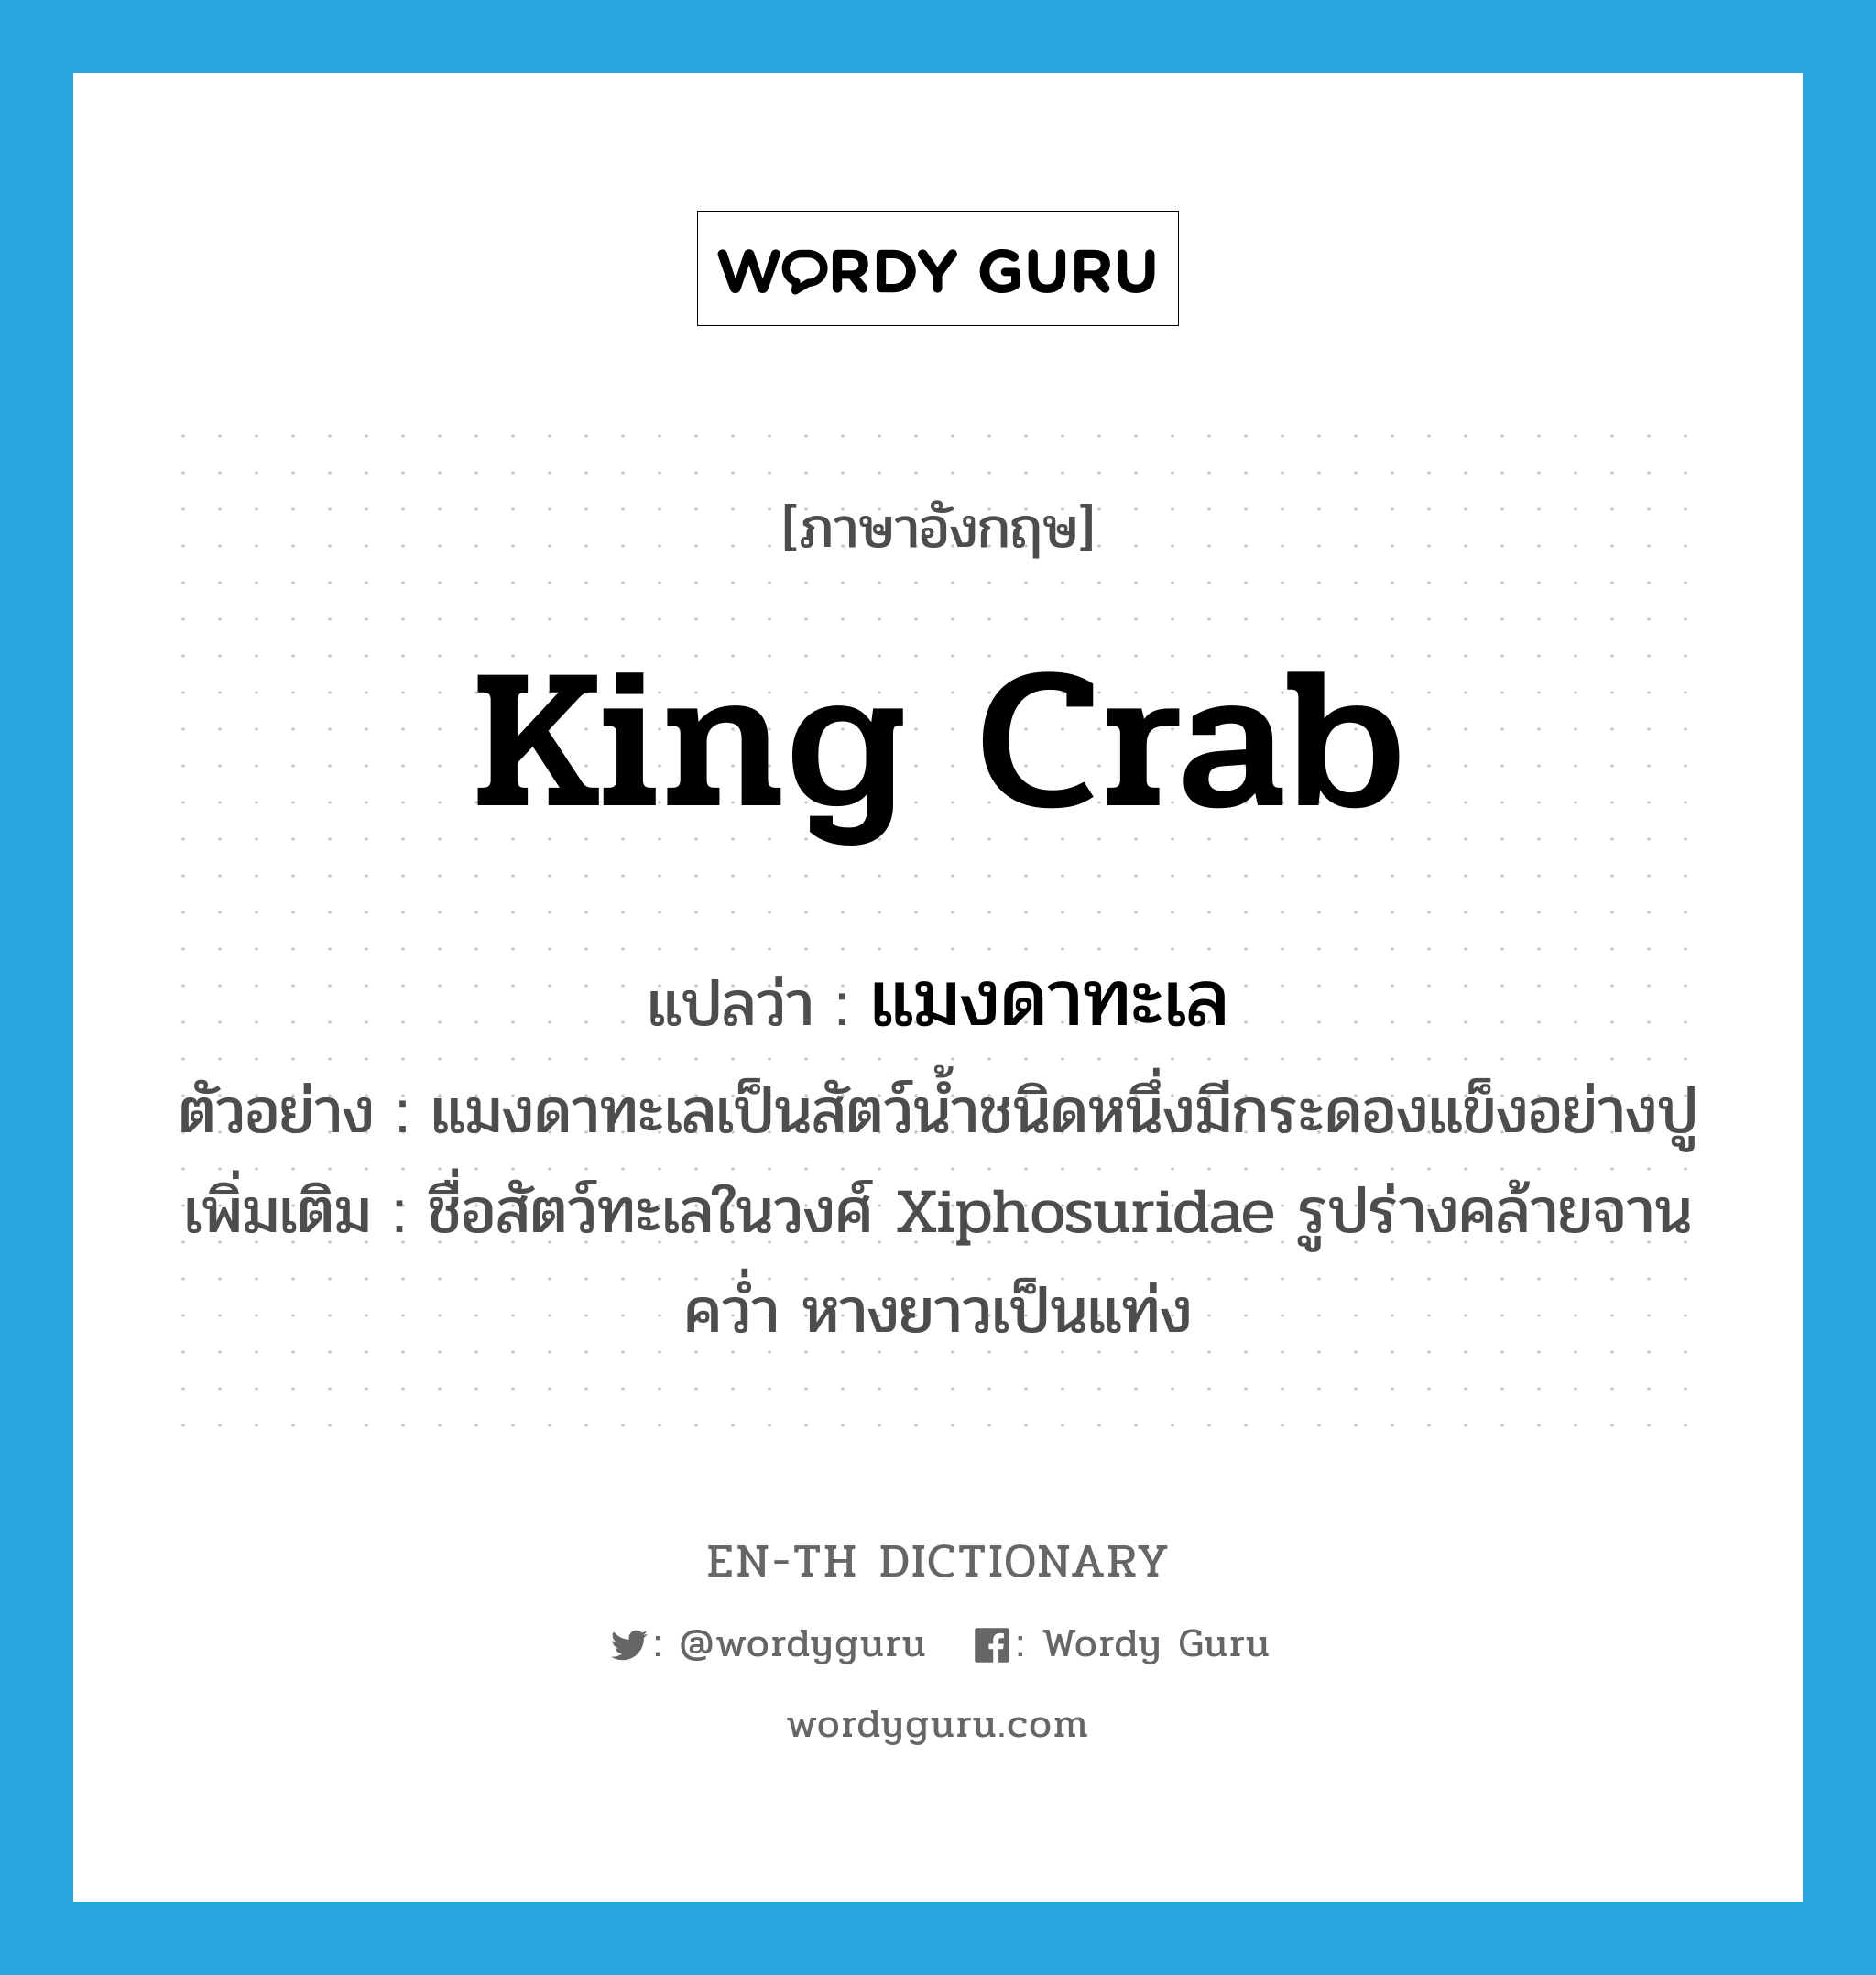 แมงดาทะเล ภาษาอังกฤษ?, คำศัพท์ภาษาอังกฤษ แมงดาทะเล แปลว่า king crab ประเภท N ตัวอย่าง แมงดาทะเลเป็นสัตว์น้ำชนิดหนึ่งมีกระดองแข็งอย่างปู เพิ่มเติม ชื่อสัตว์ทะเลในวงศ์ Xiphosuridae รูปร่างคล้ายจานคว่ำ หางยาวเป็นแท่ง หมวด N